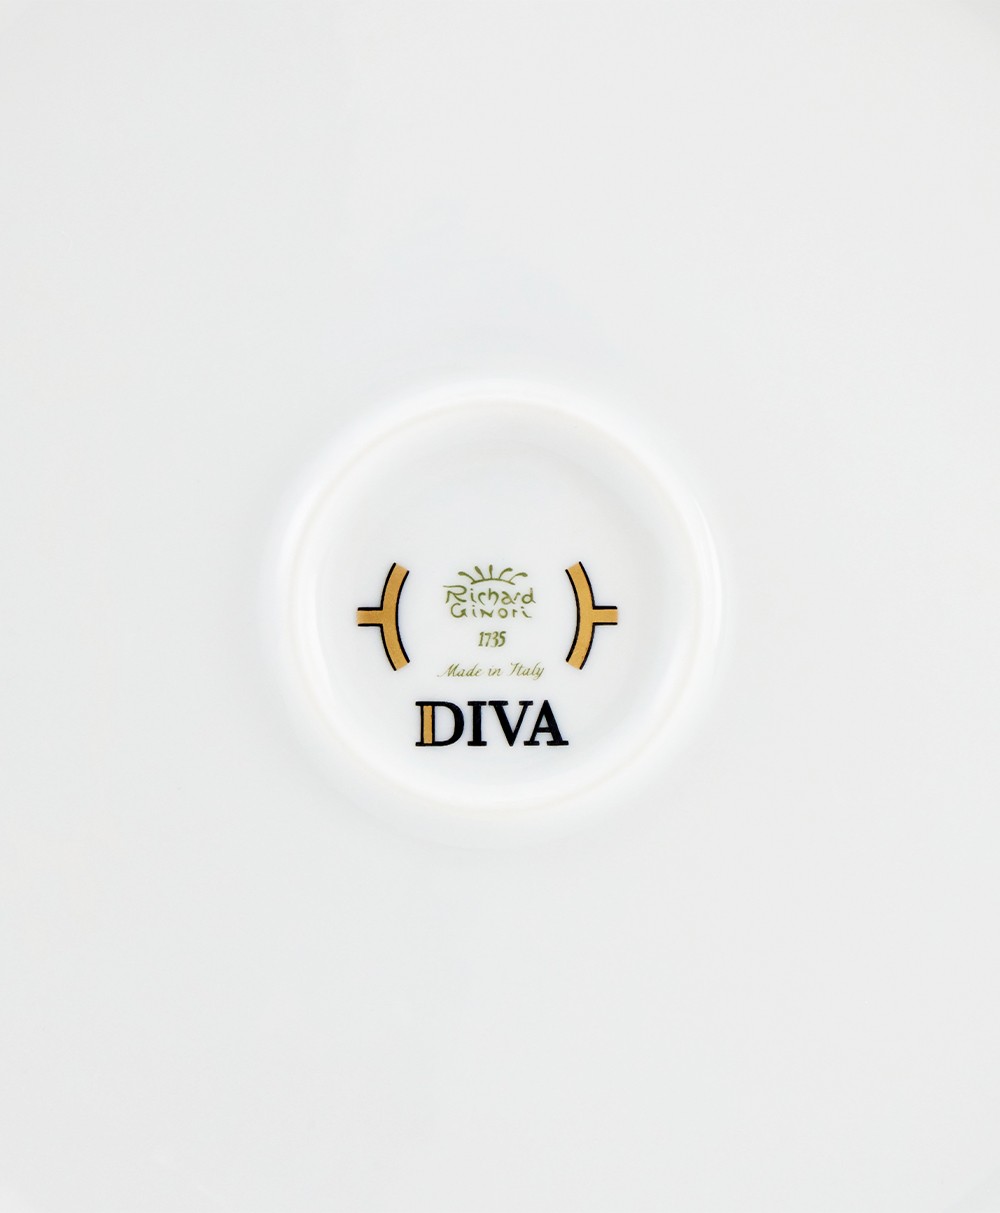 Hier abgebildet die Bowl der Diva Kollektion von Ginori 1735 - RAUM concept store